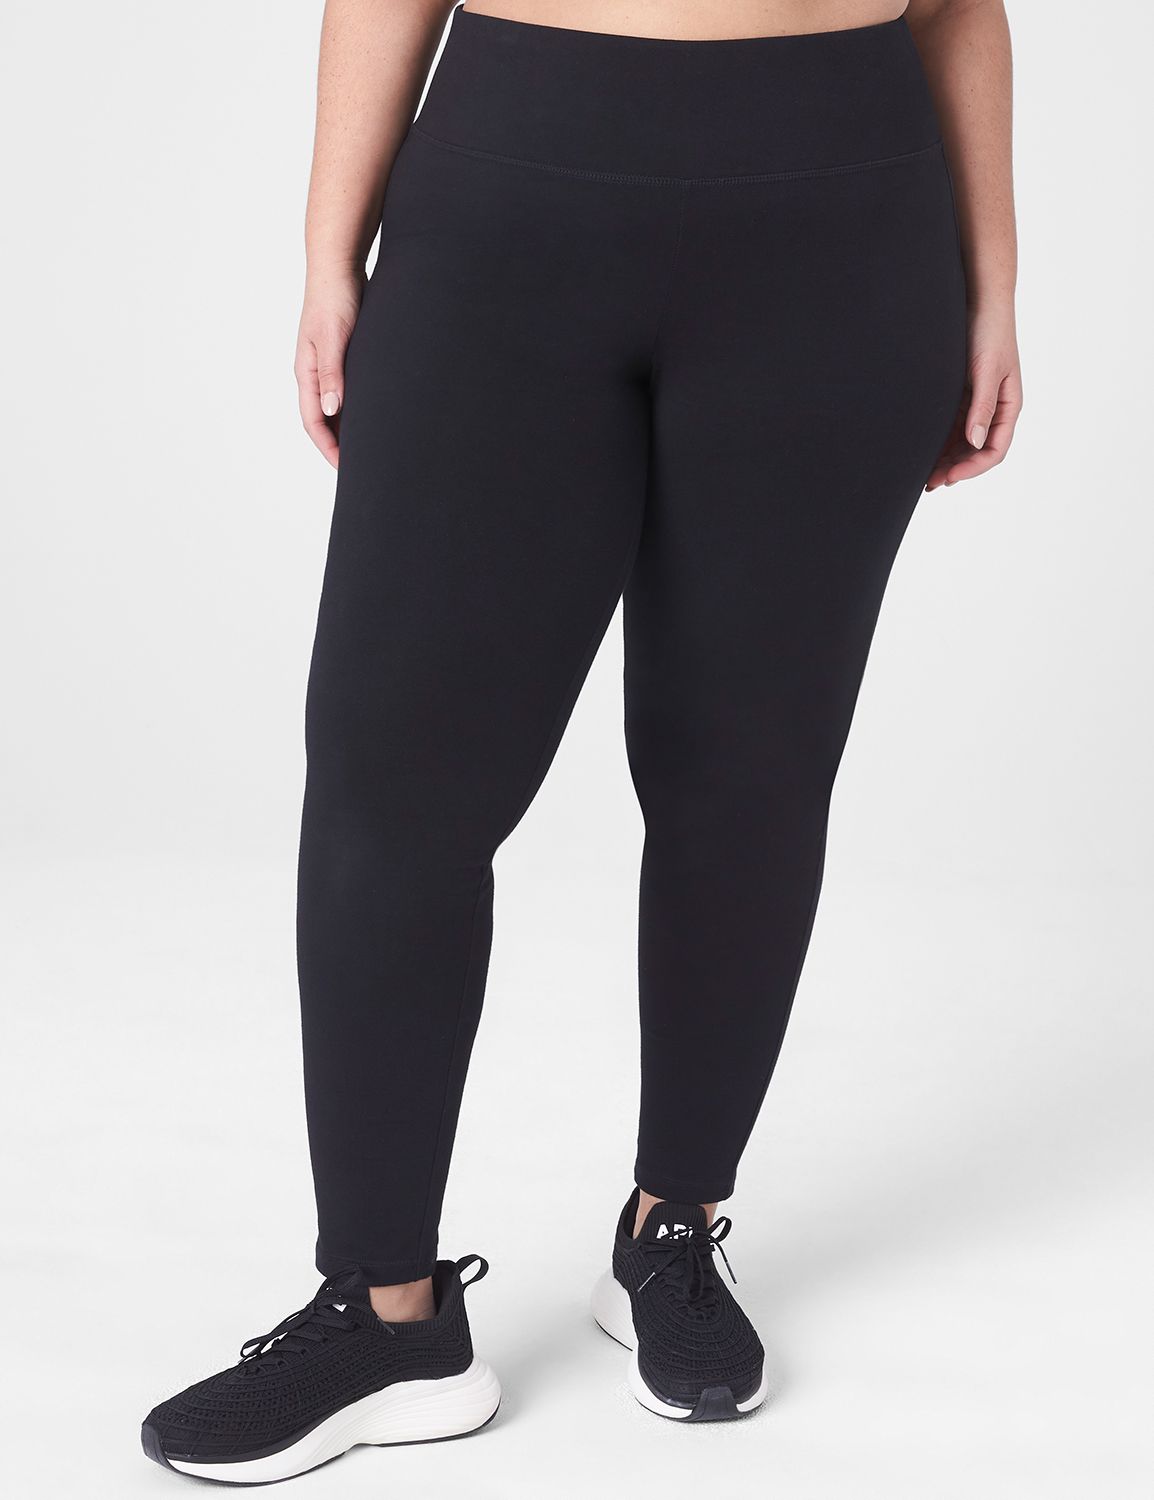 Plus Size Workout Pants & Leggings | Lane Bryant